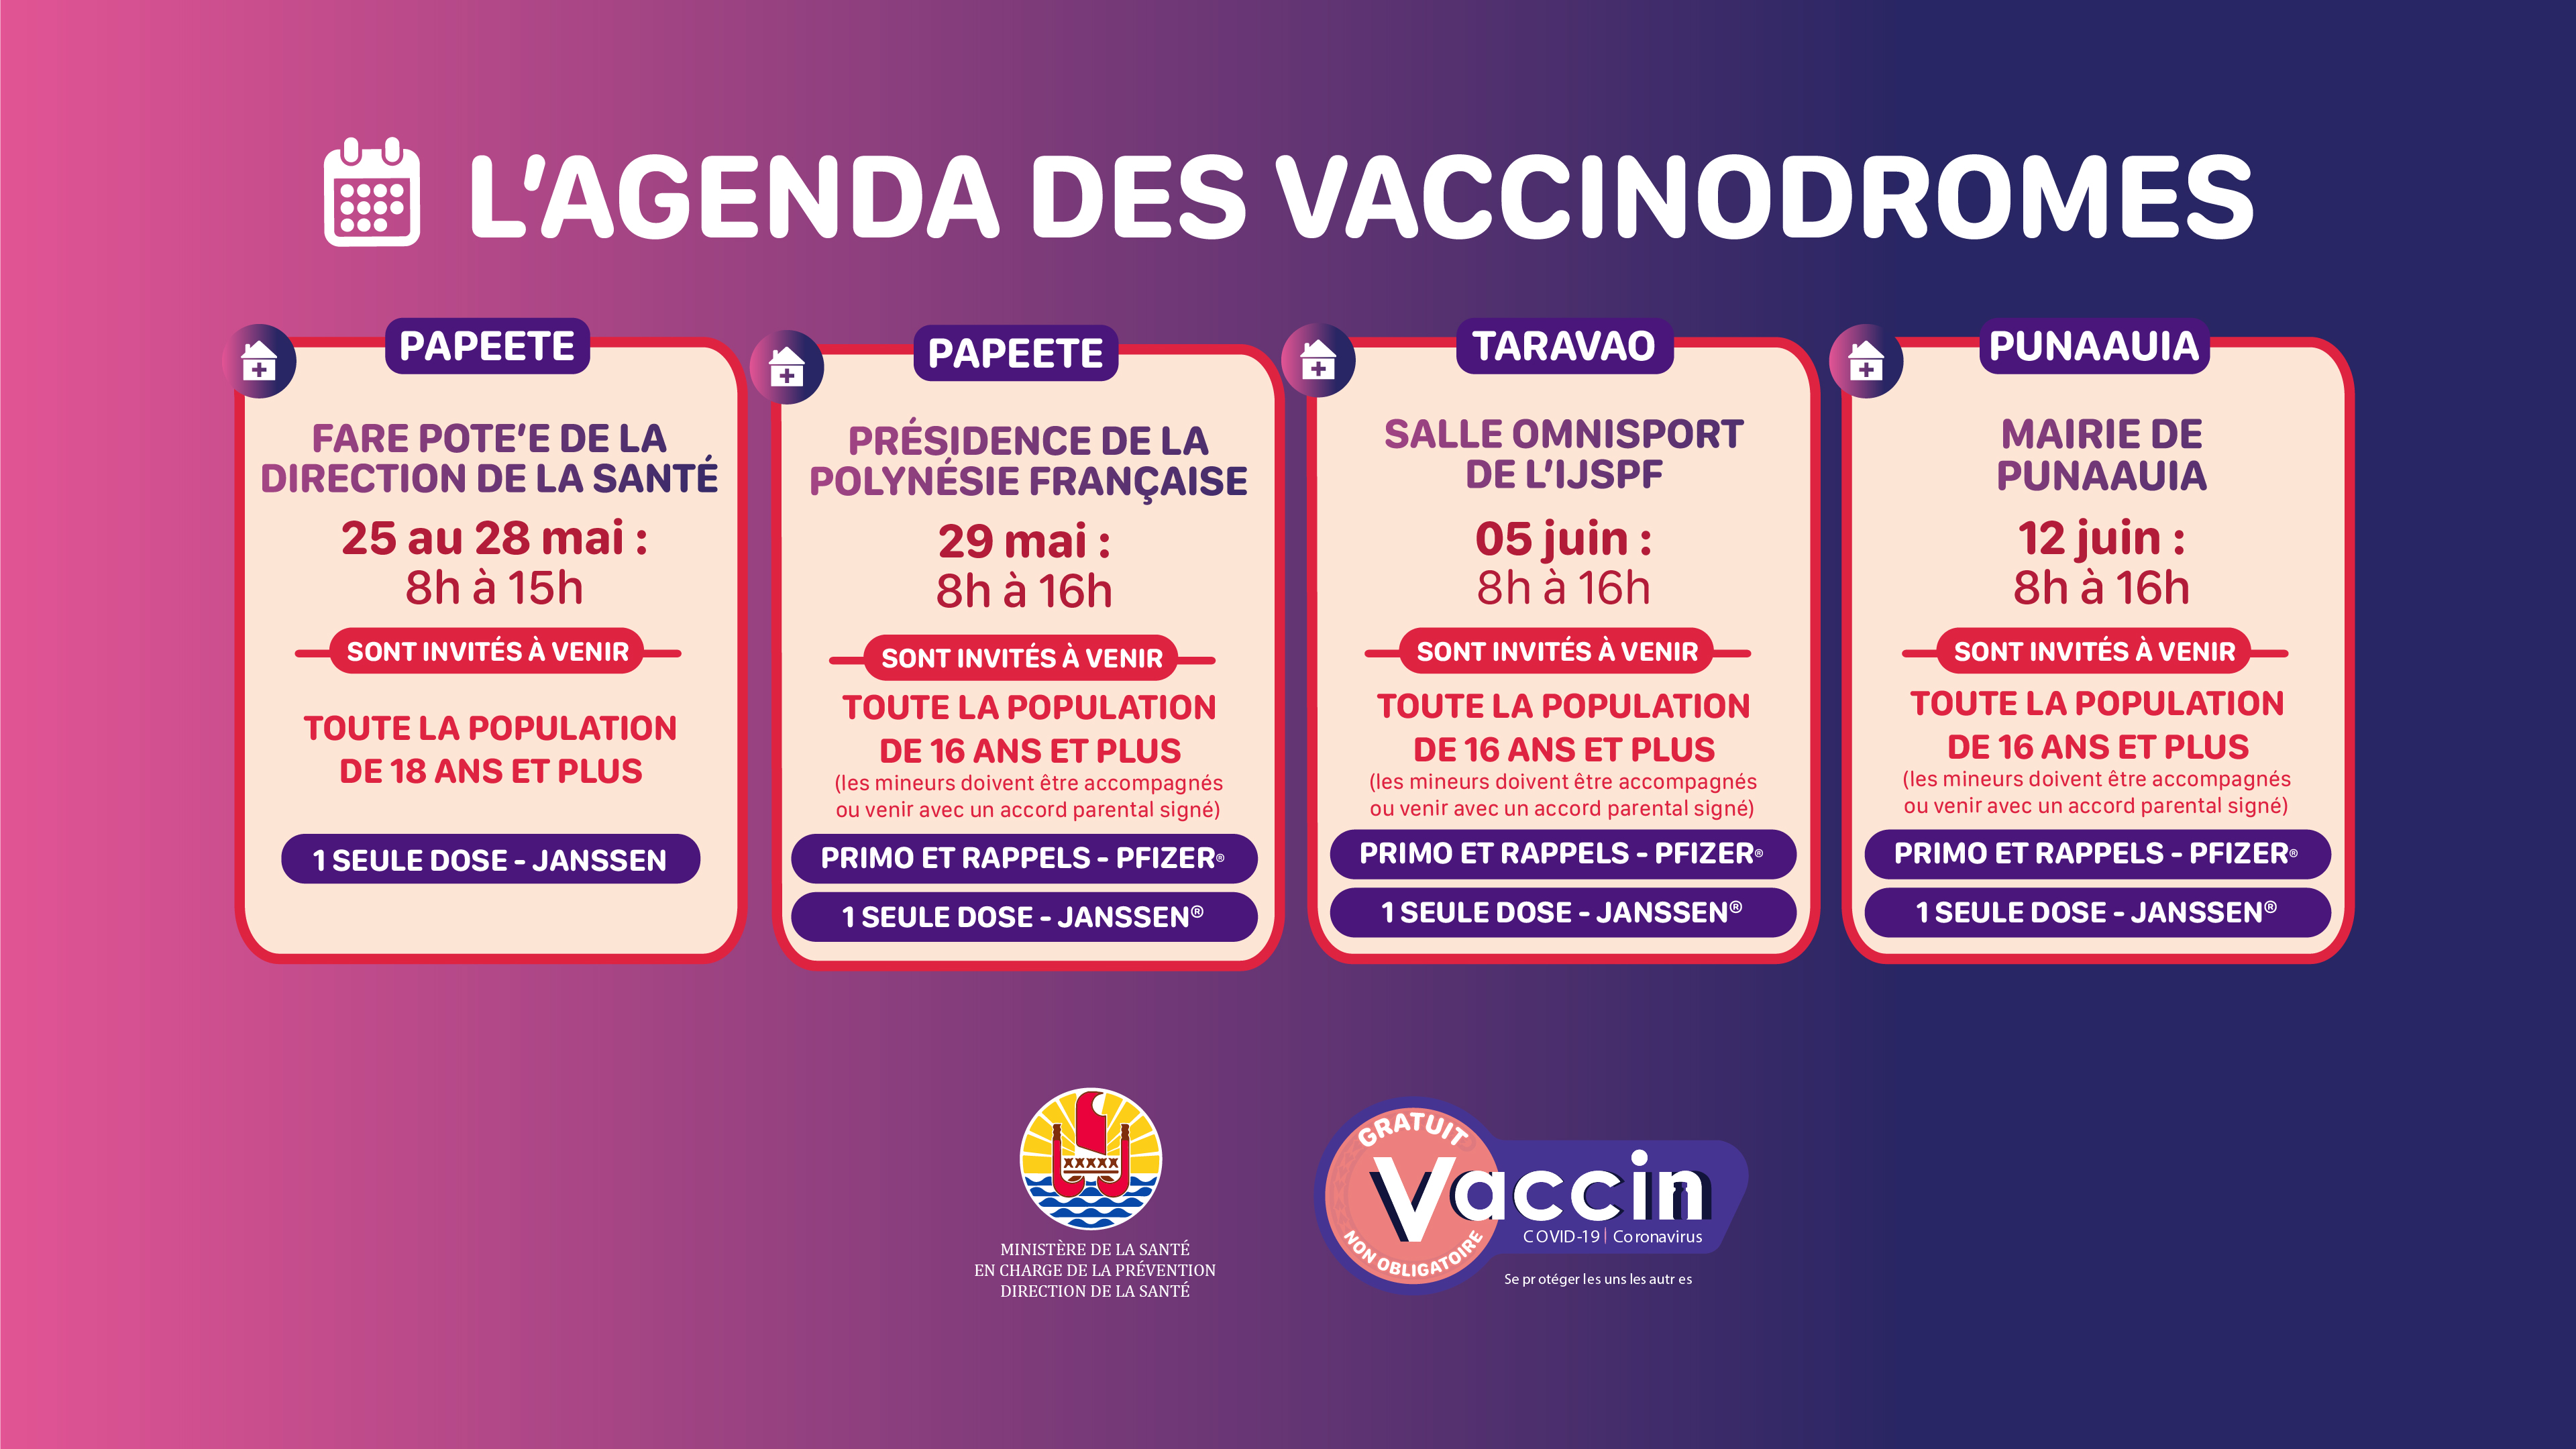 L'agenda des vaccinodromes jusqu’au 12 juin dévoilé